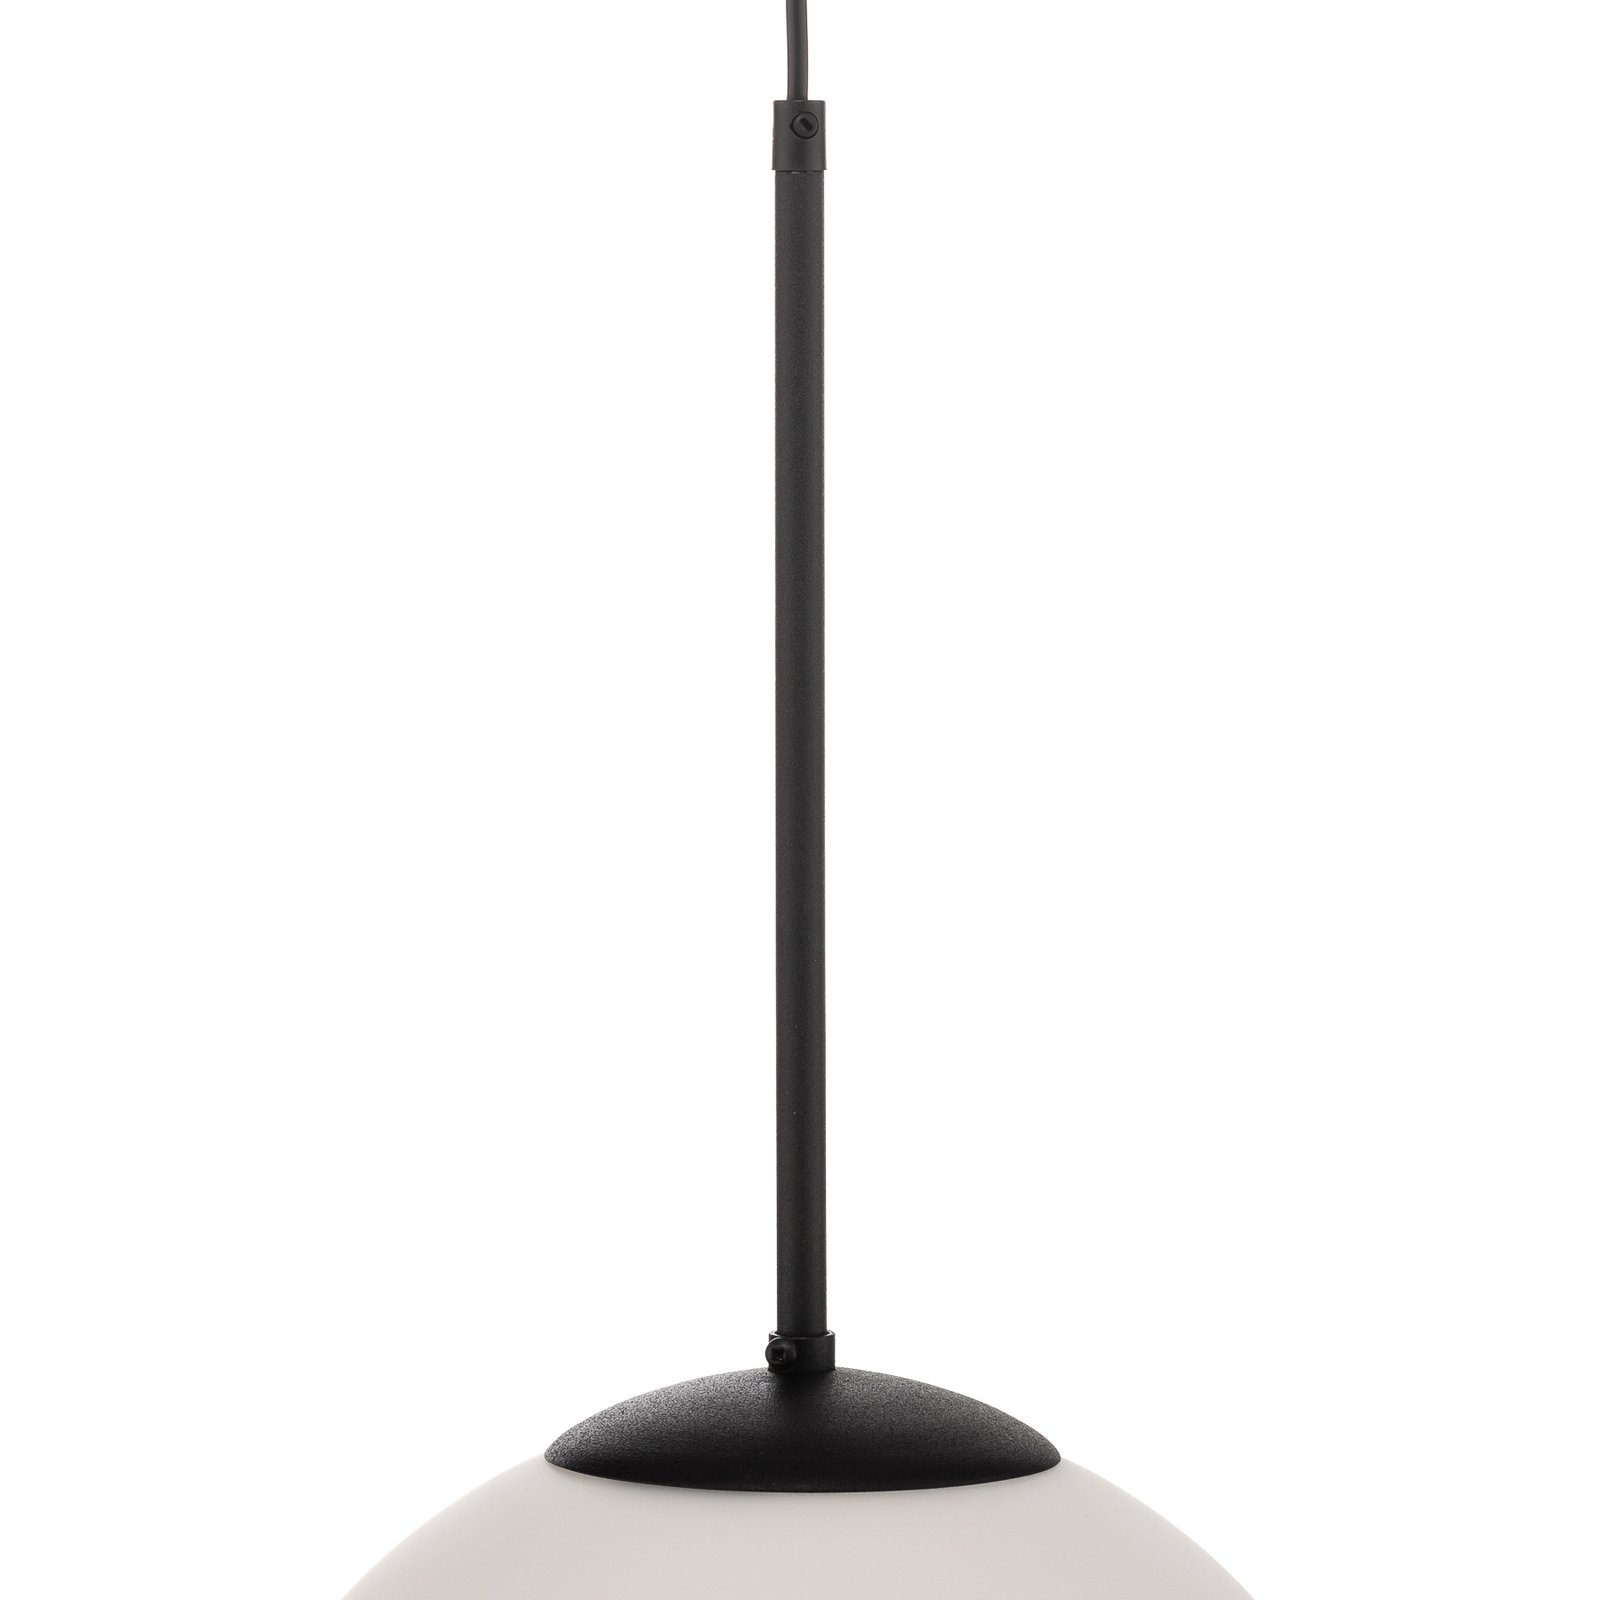 Lampa wisząca Bosso, 1-punktowa, biała/czarna 30cm